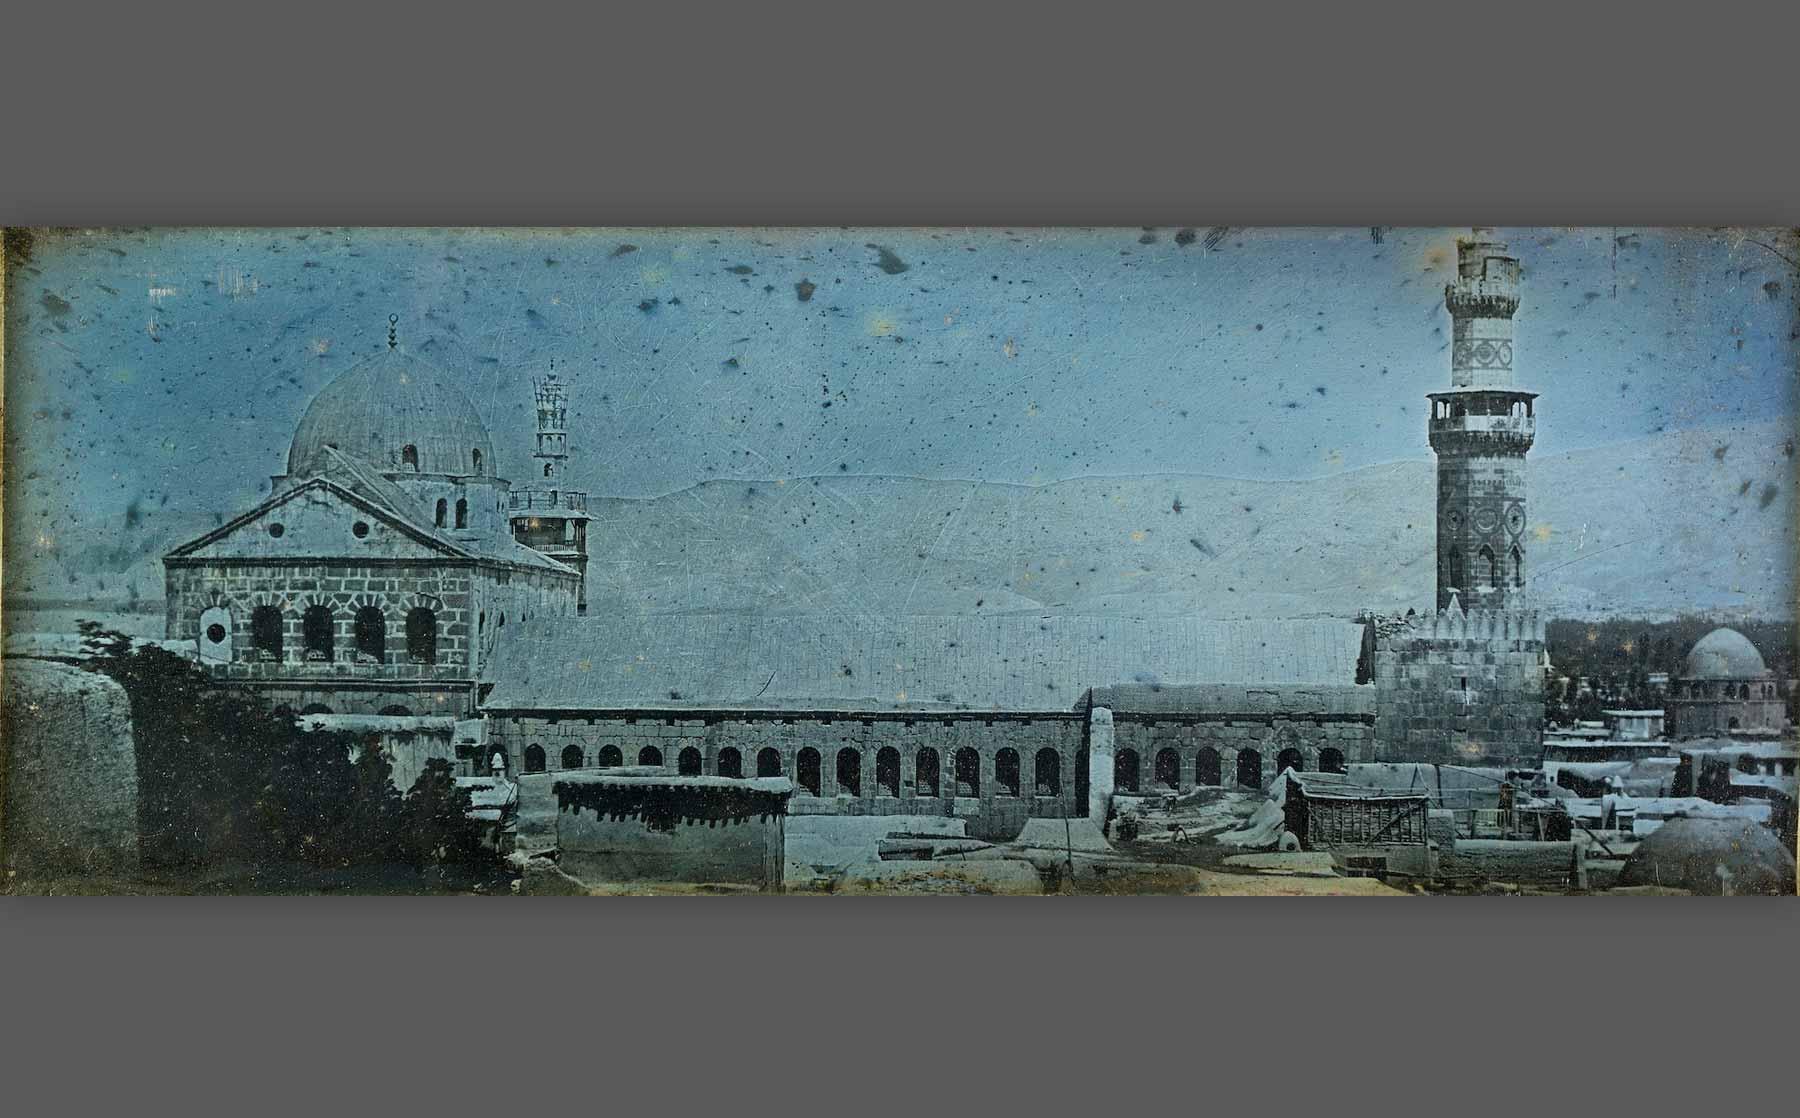 Girault de Prangey, “Great Mosque of Damascus” (1843), daguerreotype.